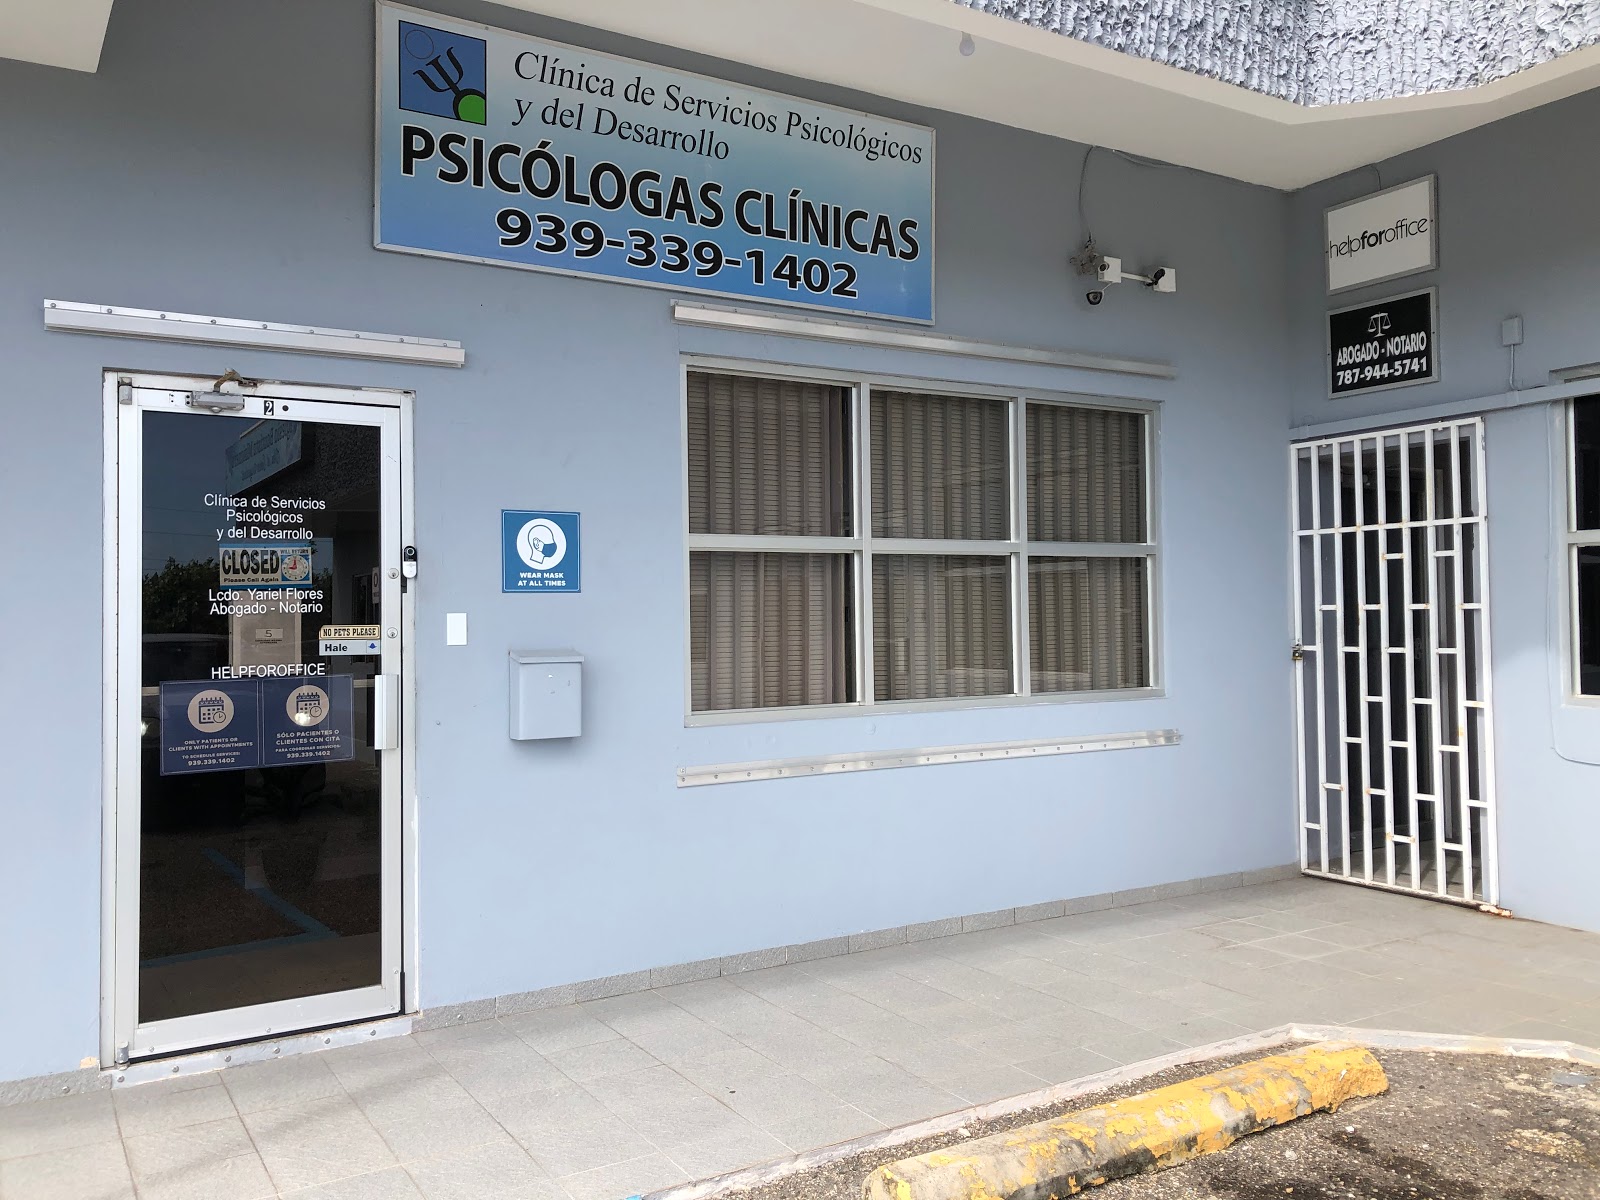 Clinica de Servicios Psicologicos - Del Desarollo